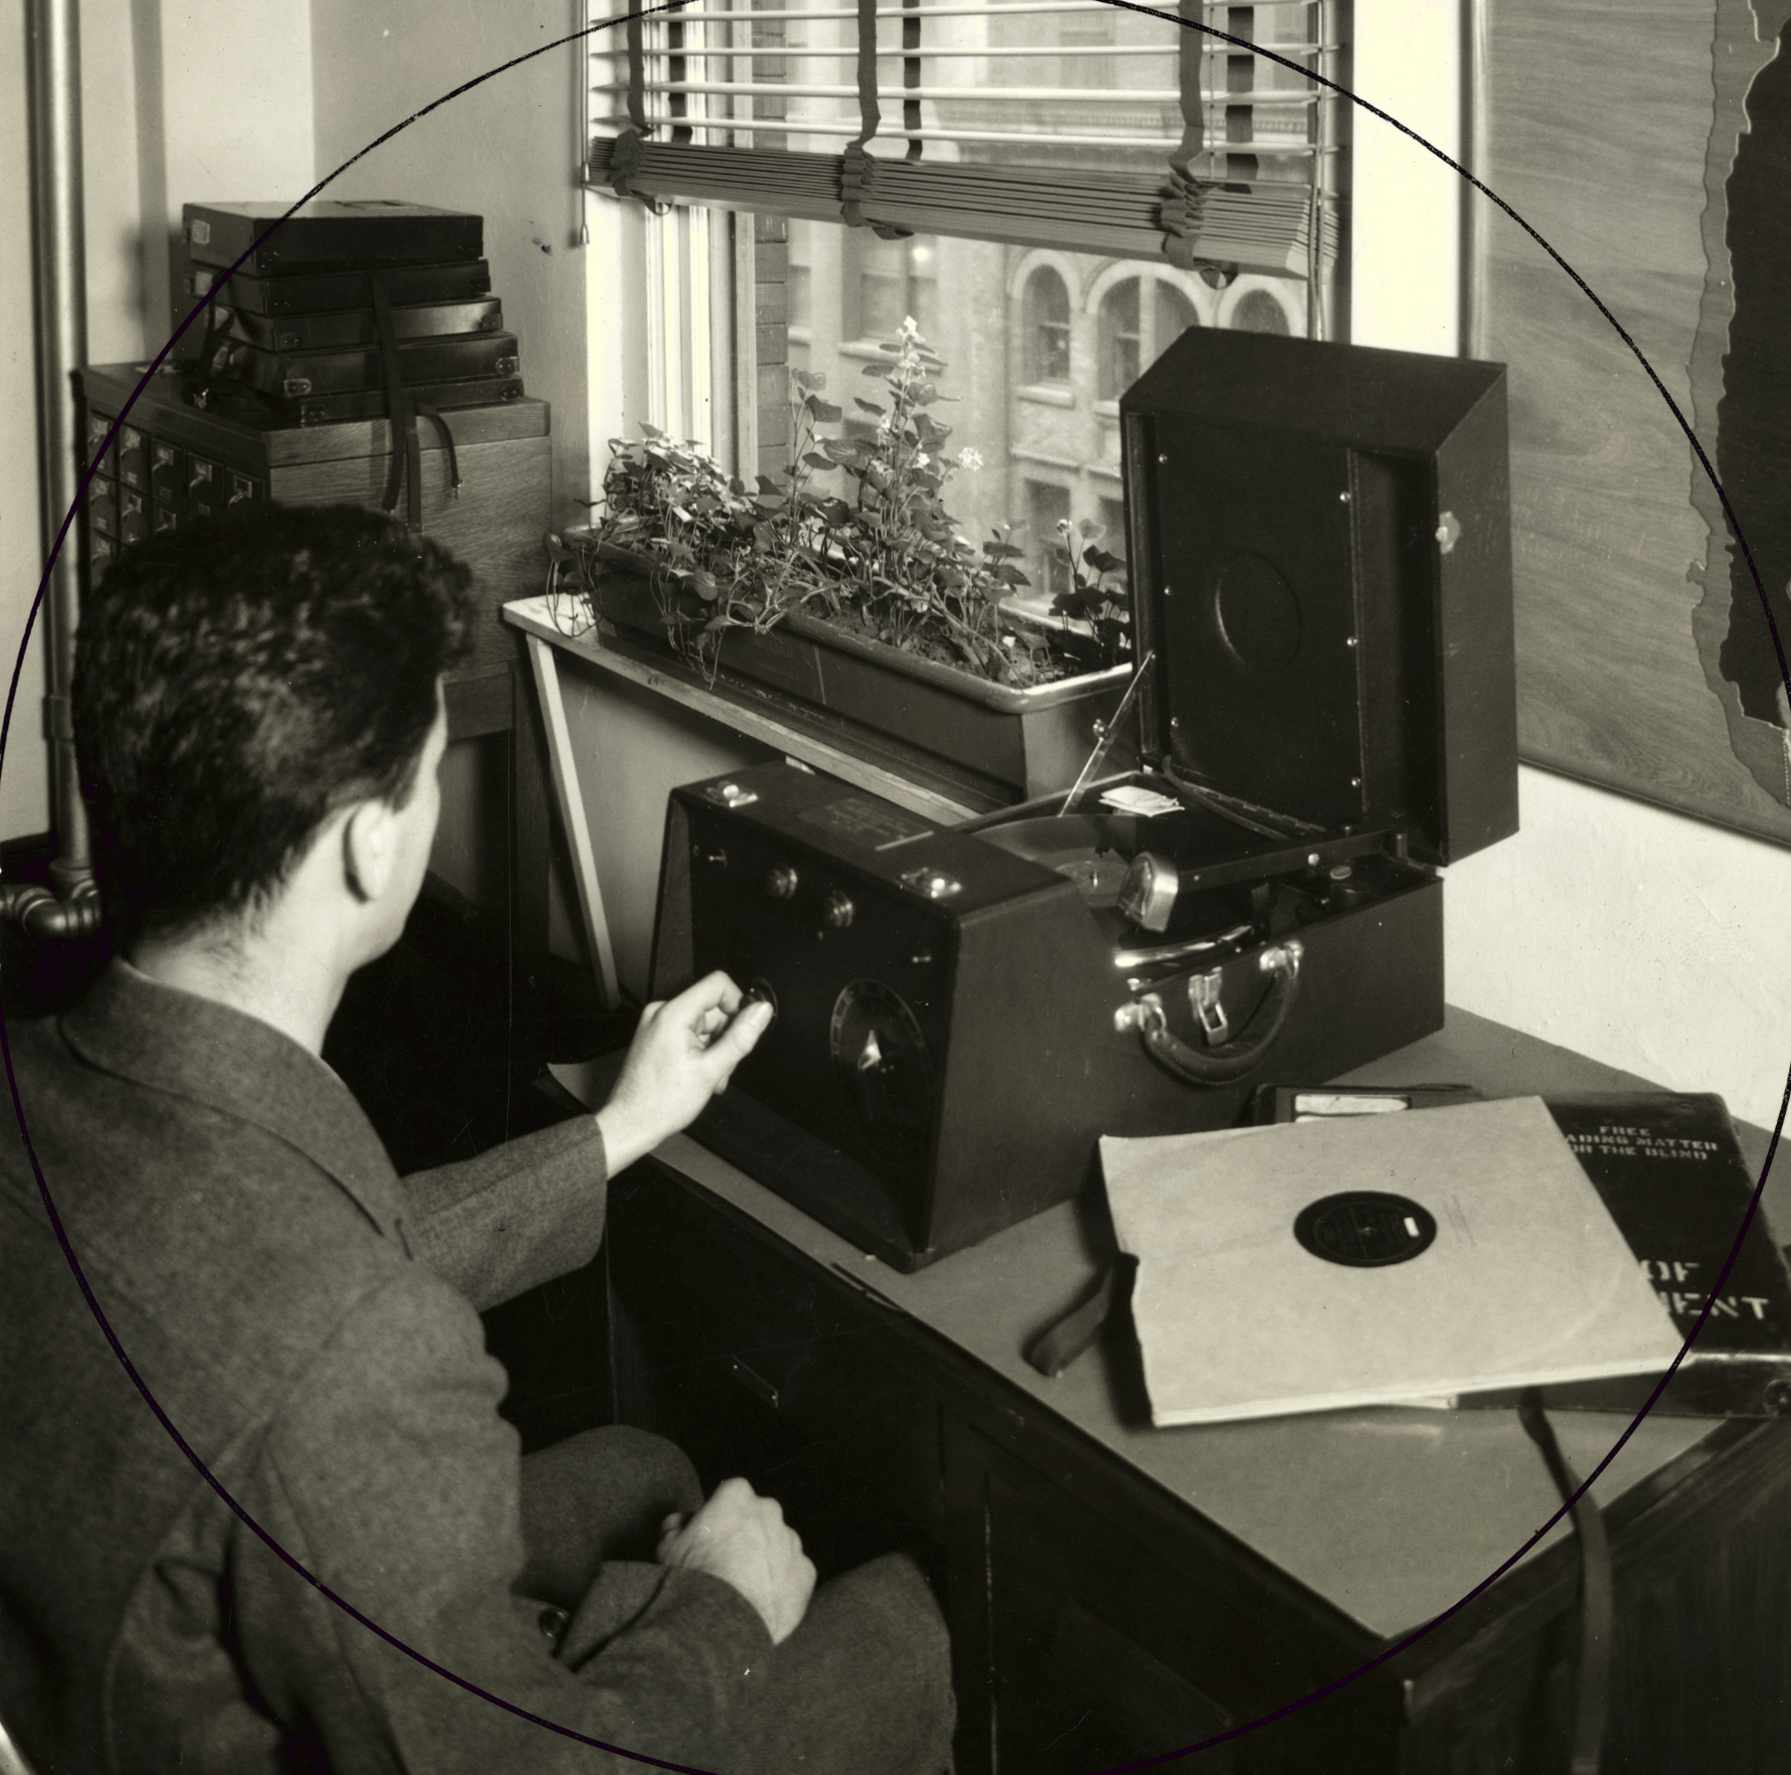 Un homme assis devant un bureau utilise un dispositif ressemblant à un volumineux tourne-disque portatif